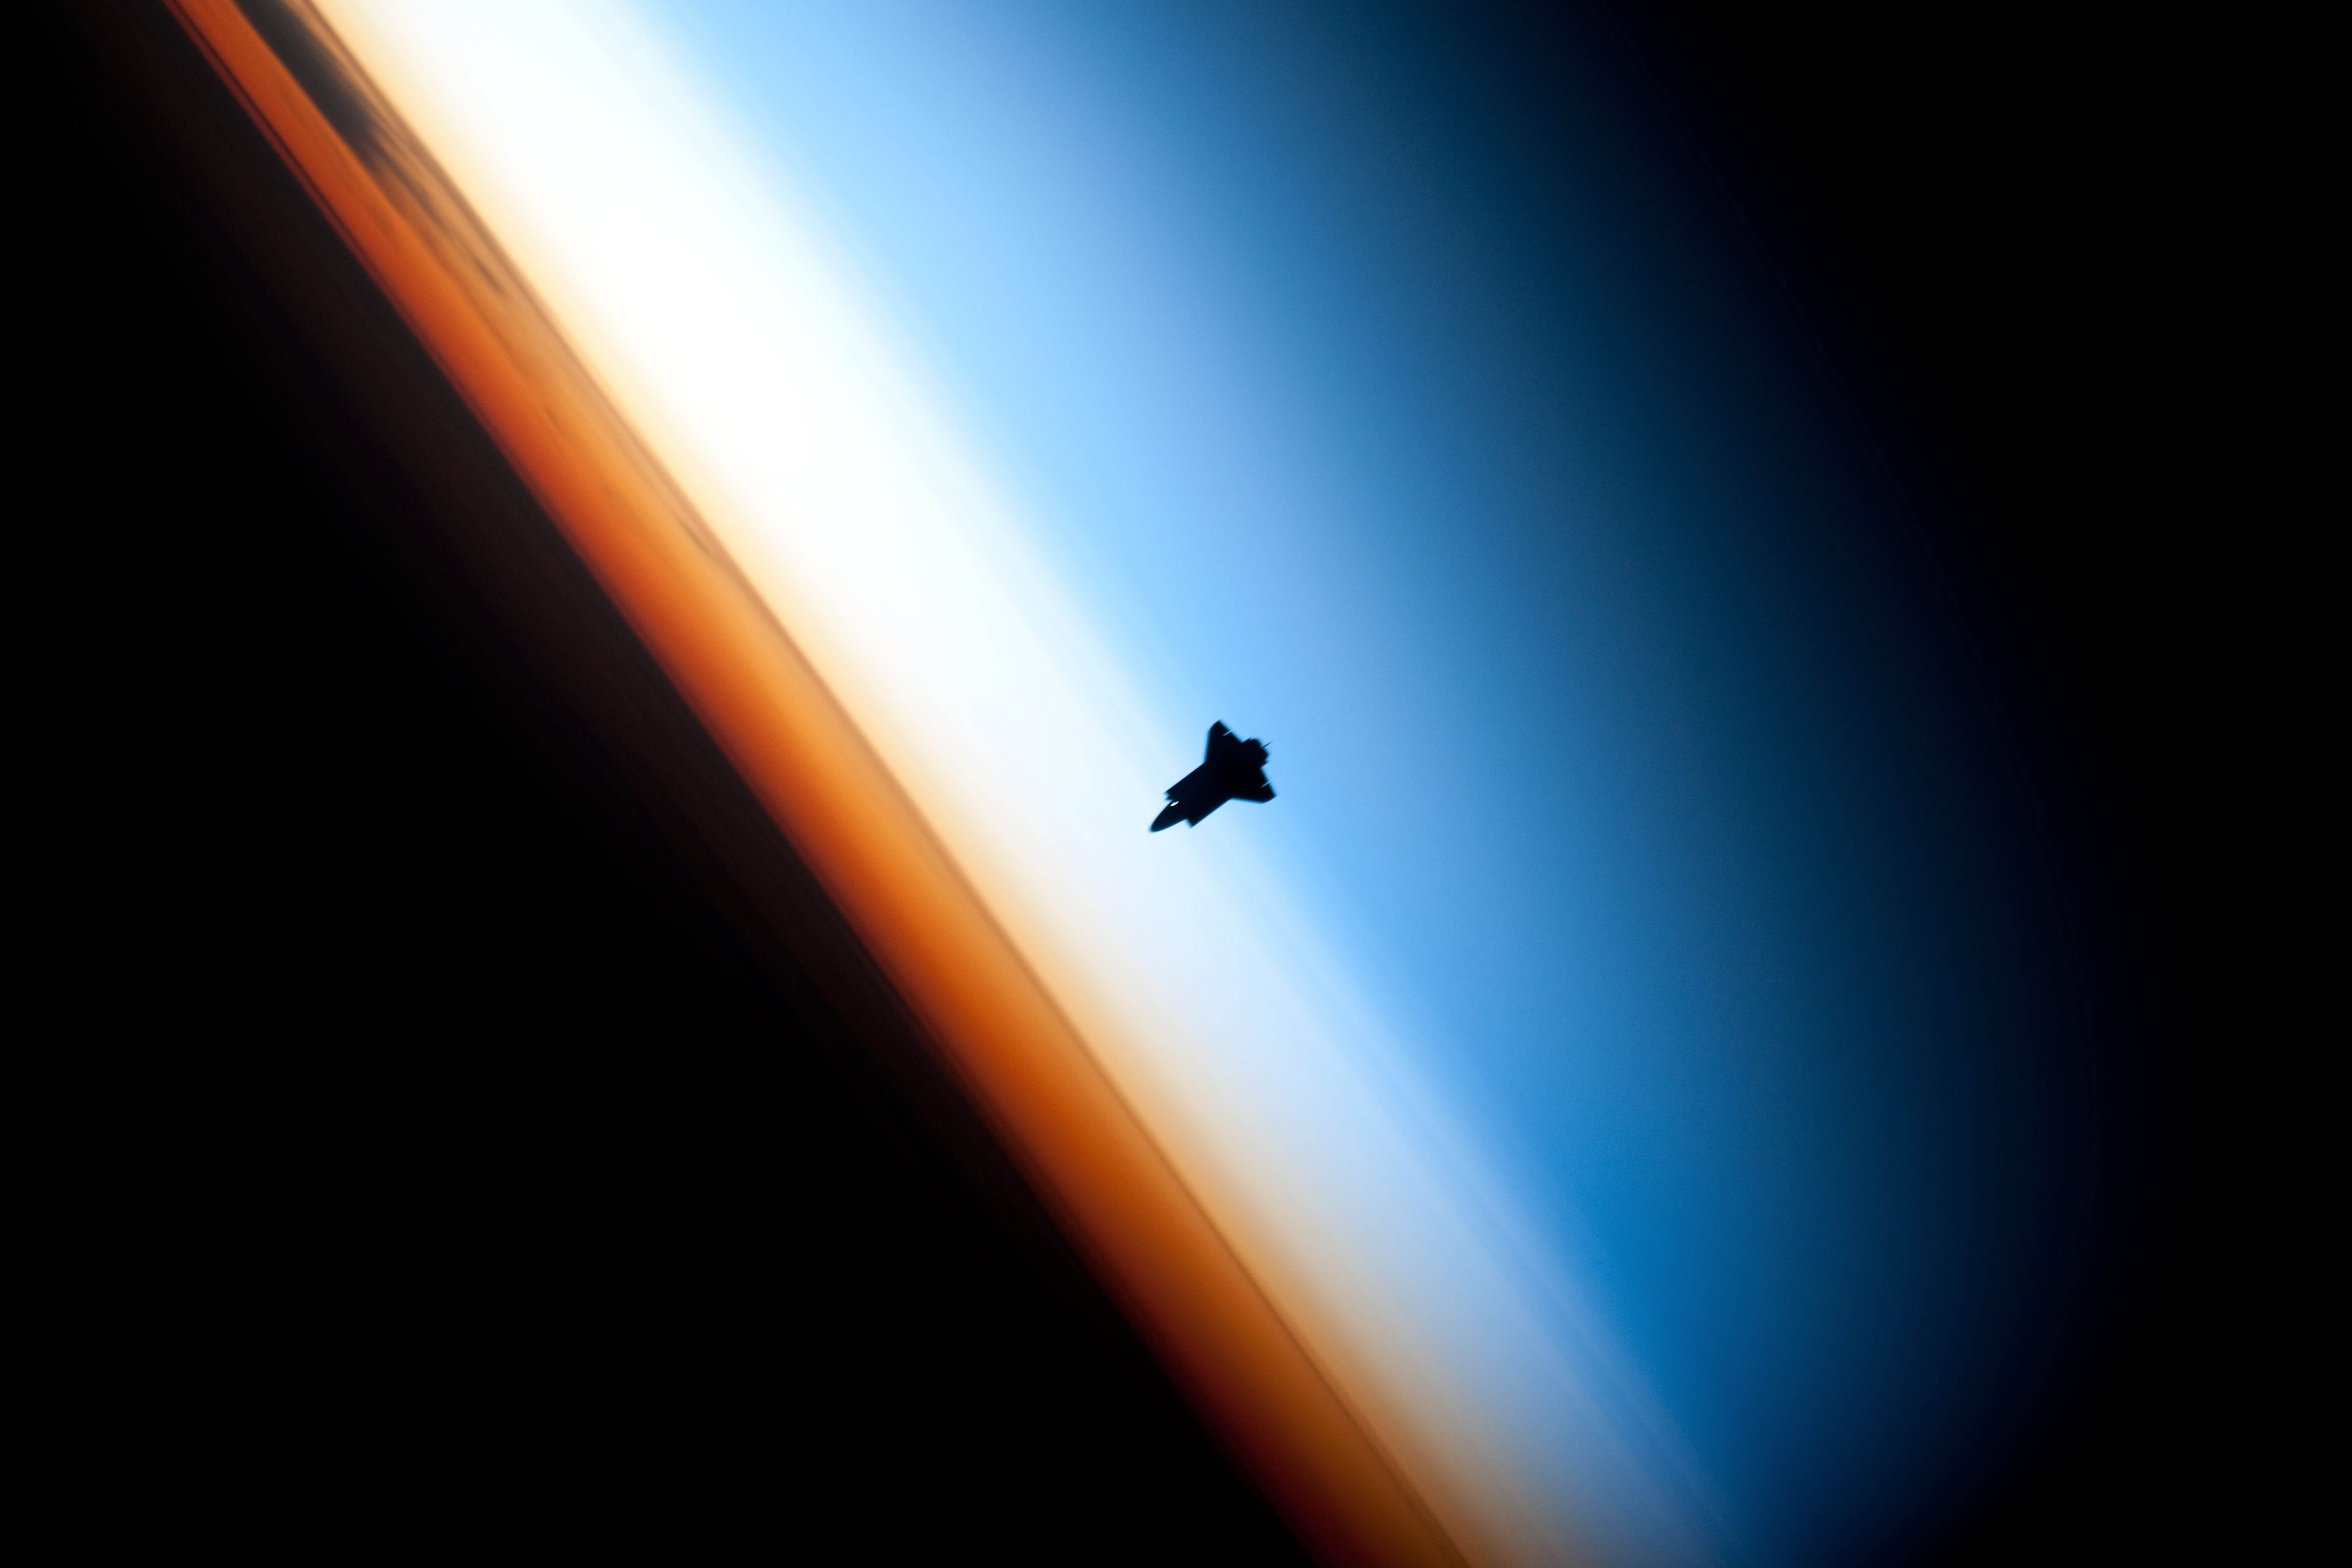 Shuttle between pure cyanish mesosphere and hazy yellowish stratosphere, above orange troposhere.jpg